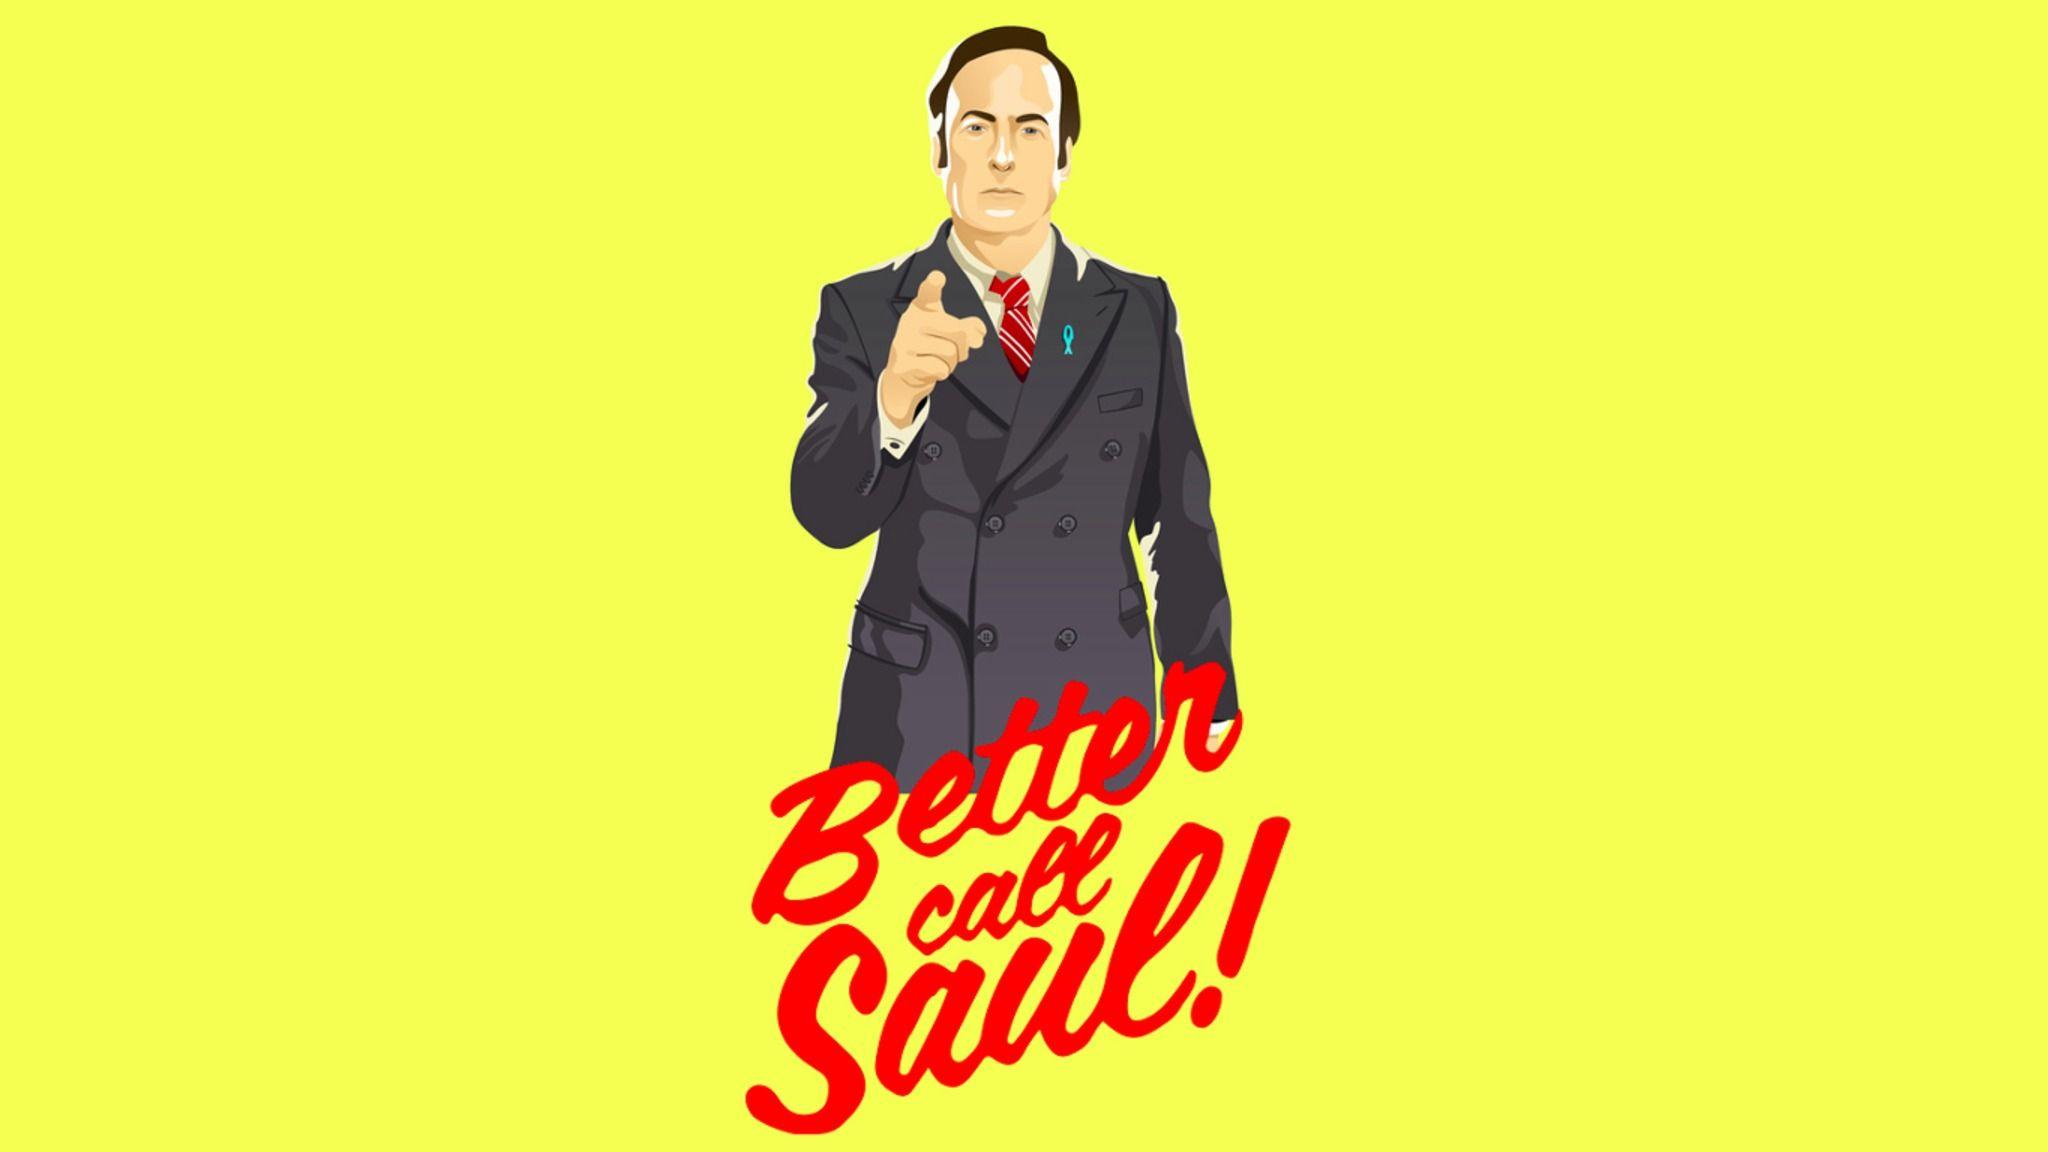 Better Call Saul Wallpaper Free Better Call Saul